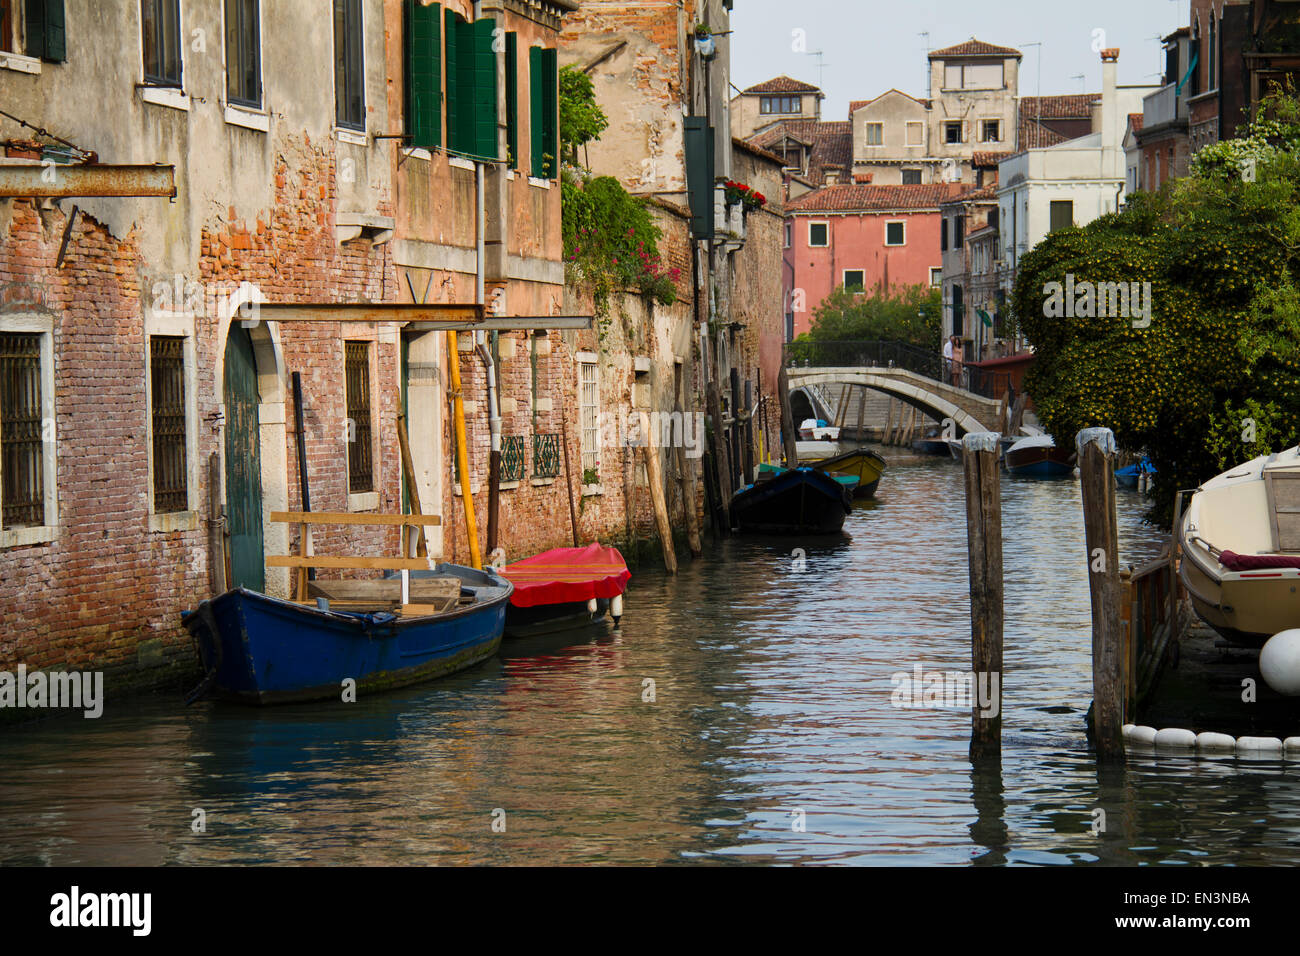 Italia, Venecia, vista escénica en un canal con botes de remo Foto de stock